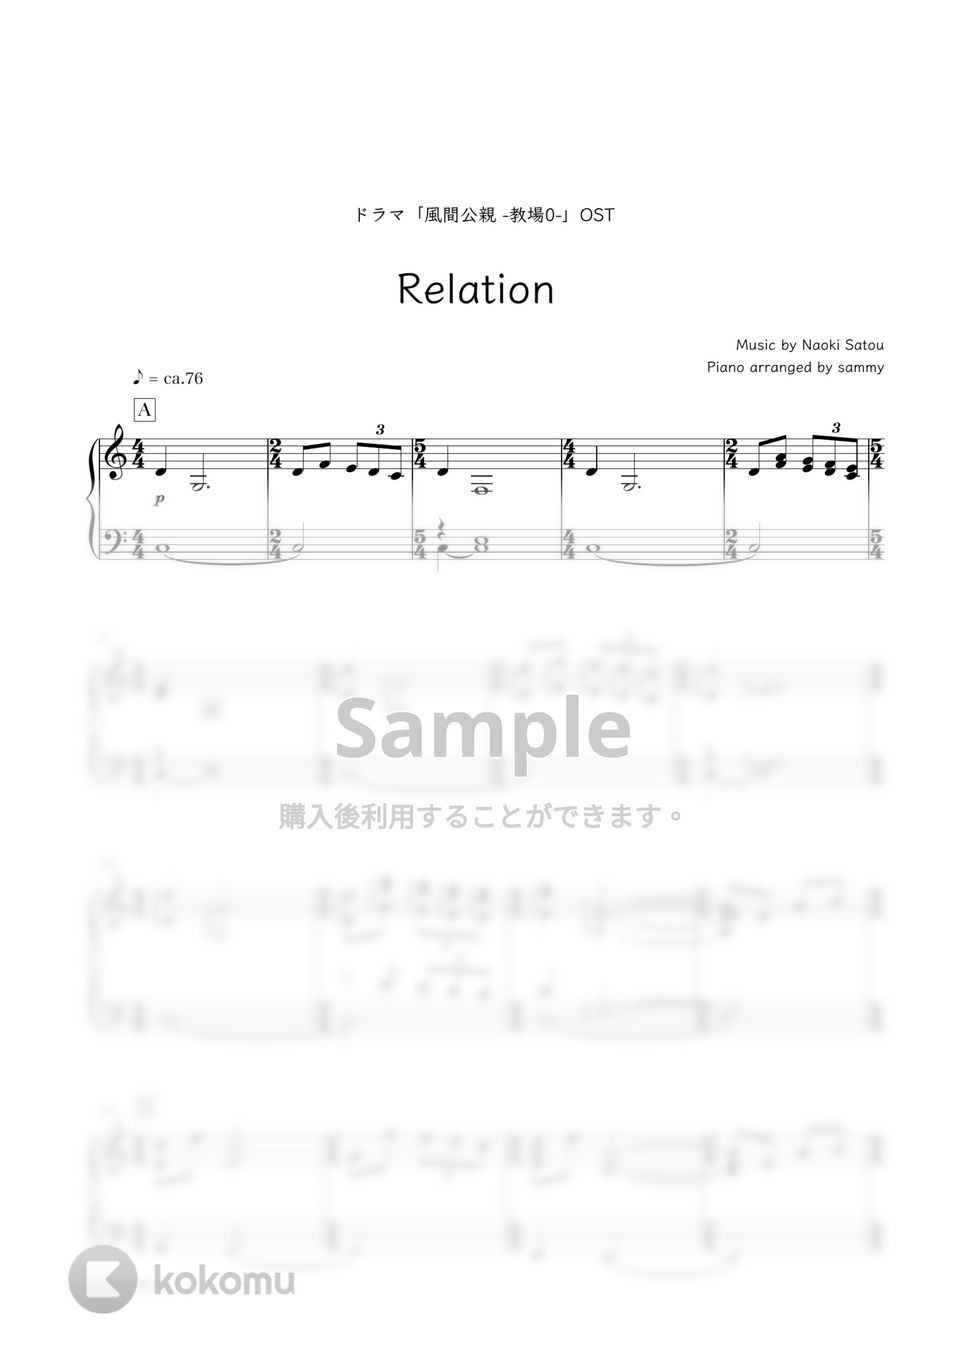 ドラマ『風間公親 ─教場0─』OST - Relation by sammy